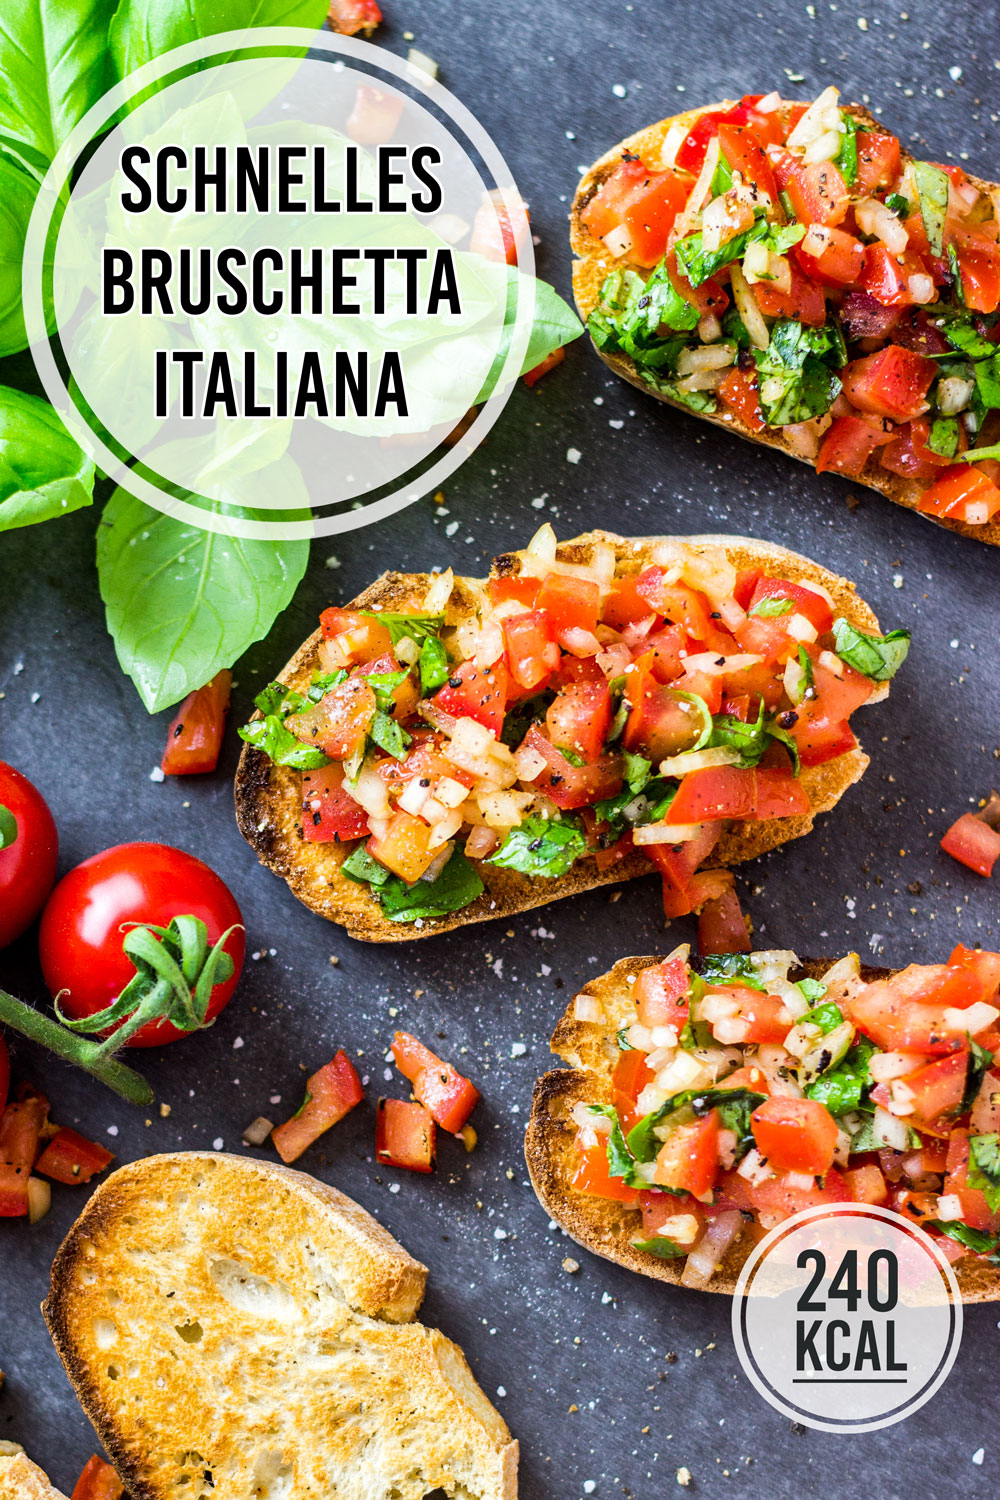 Original Bruschetta italiana - schnelles und einfaches Rezept mit Tomaten und Basilikum (kalorienarme Vorspeise!)